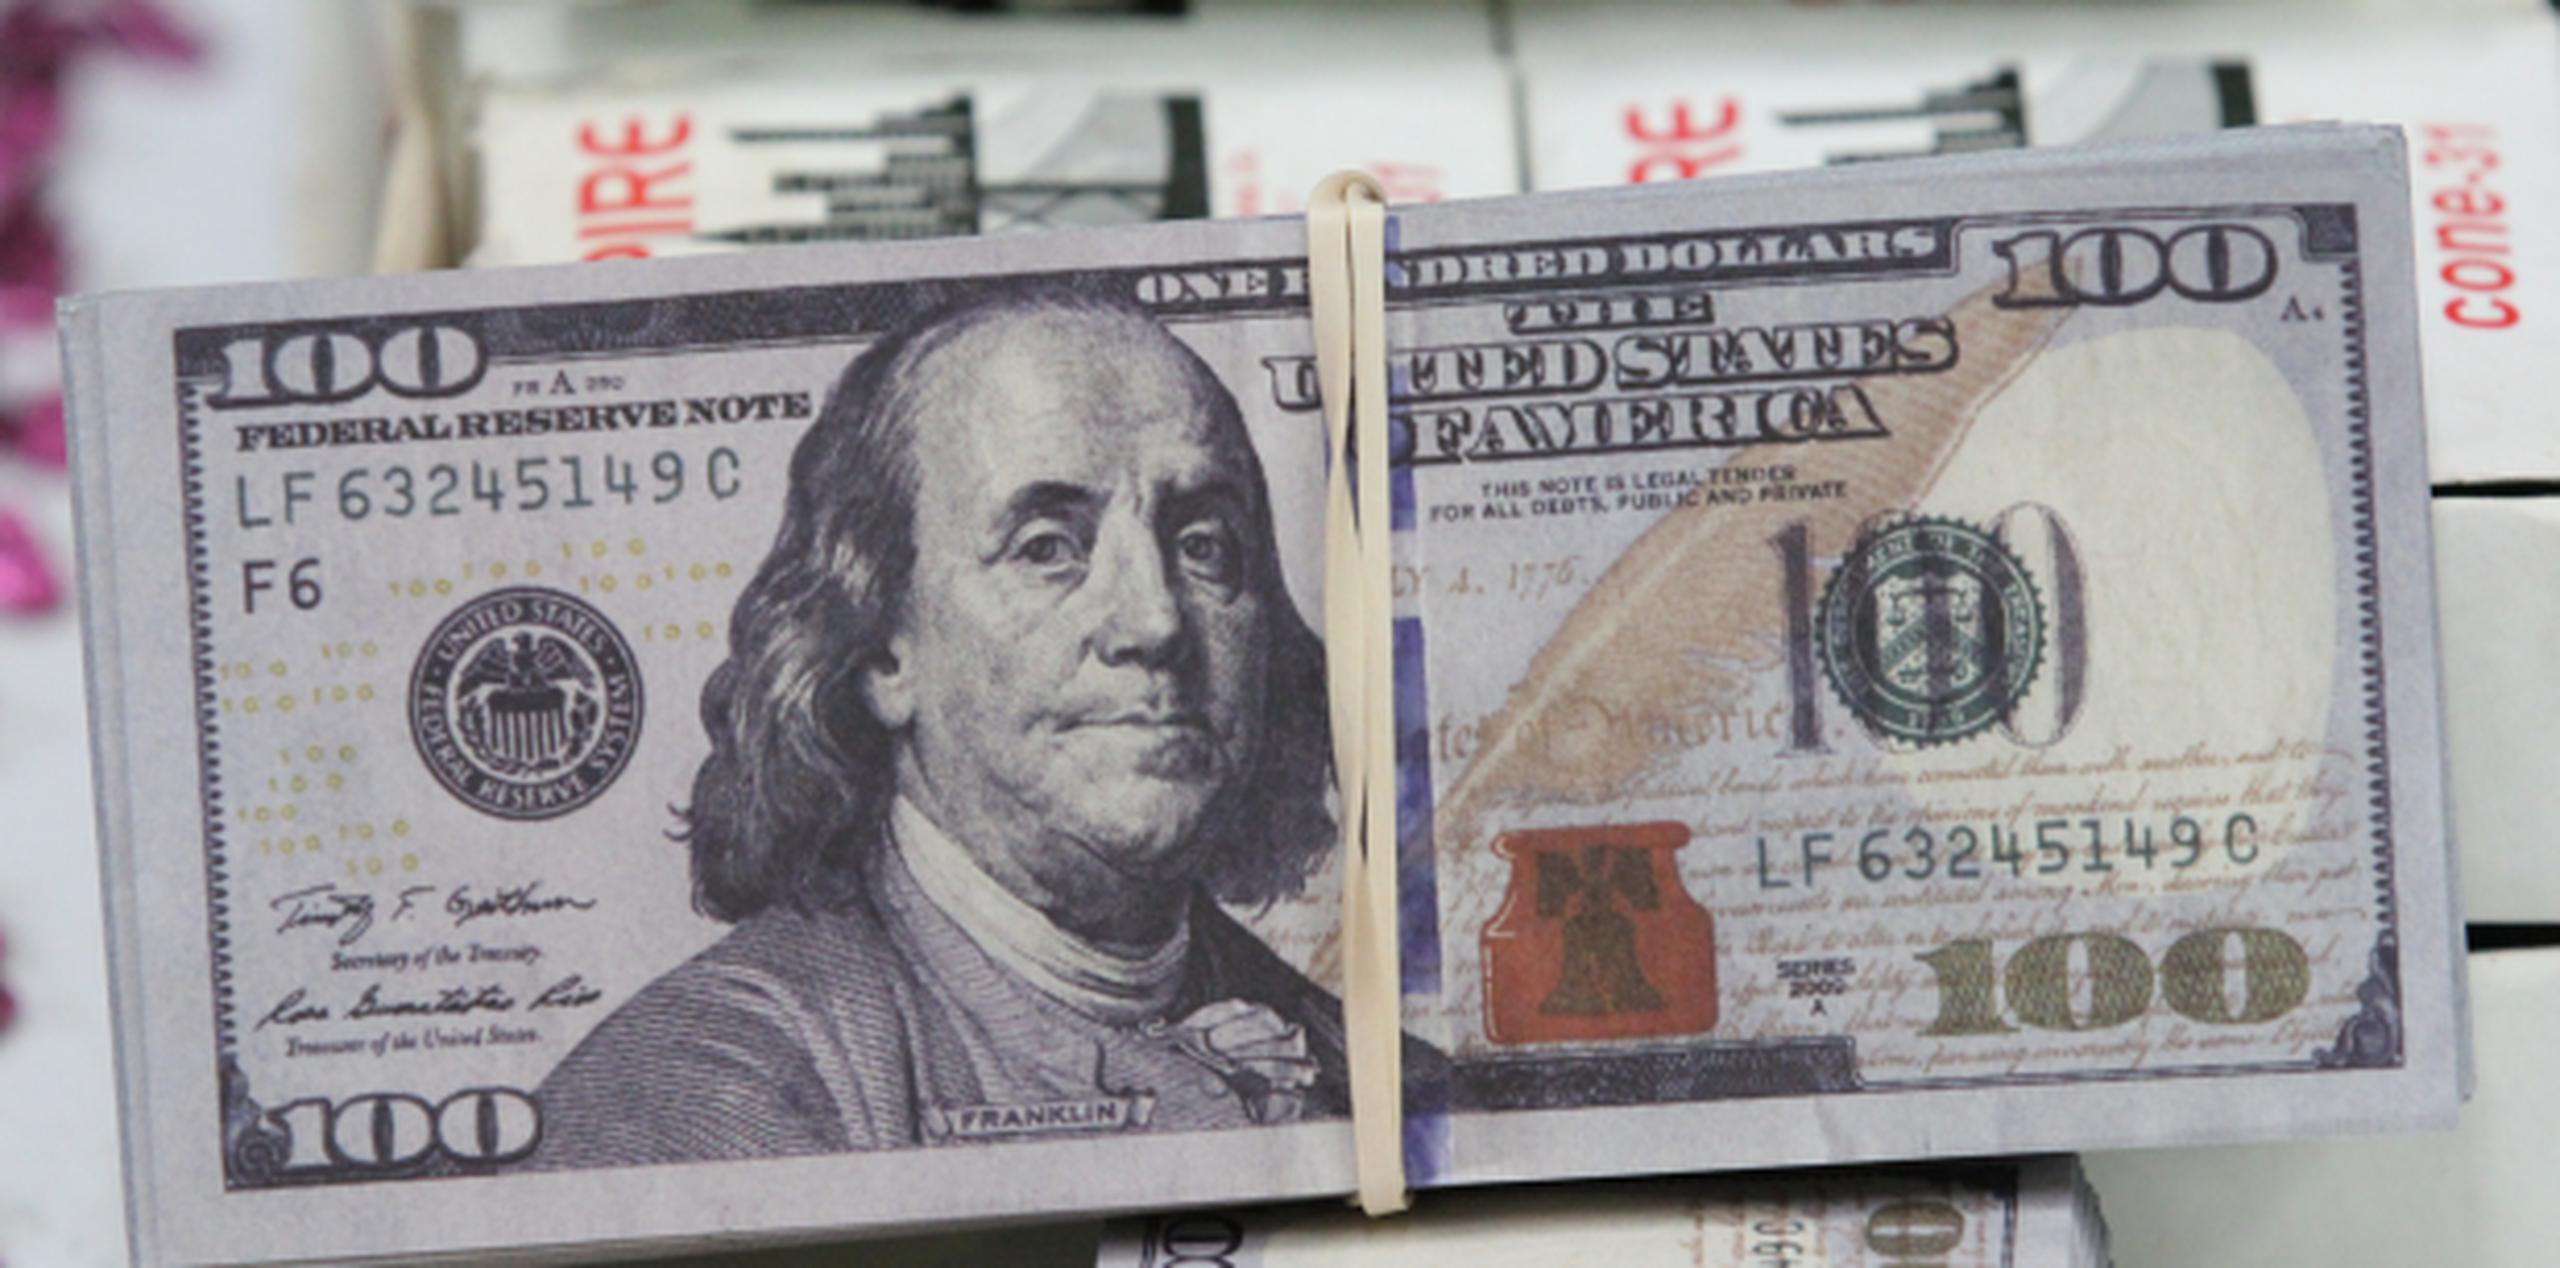 Aunque no es un problema consistente, las autoridades incautaron la semana pasada $55,000 en billetes falsos de $100. (Archivo)